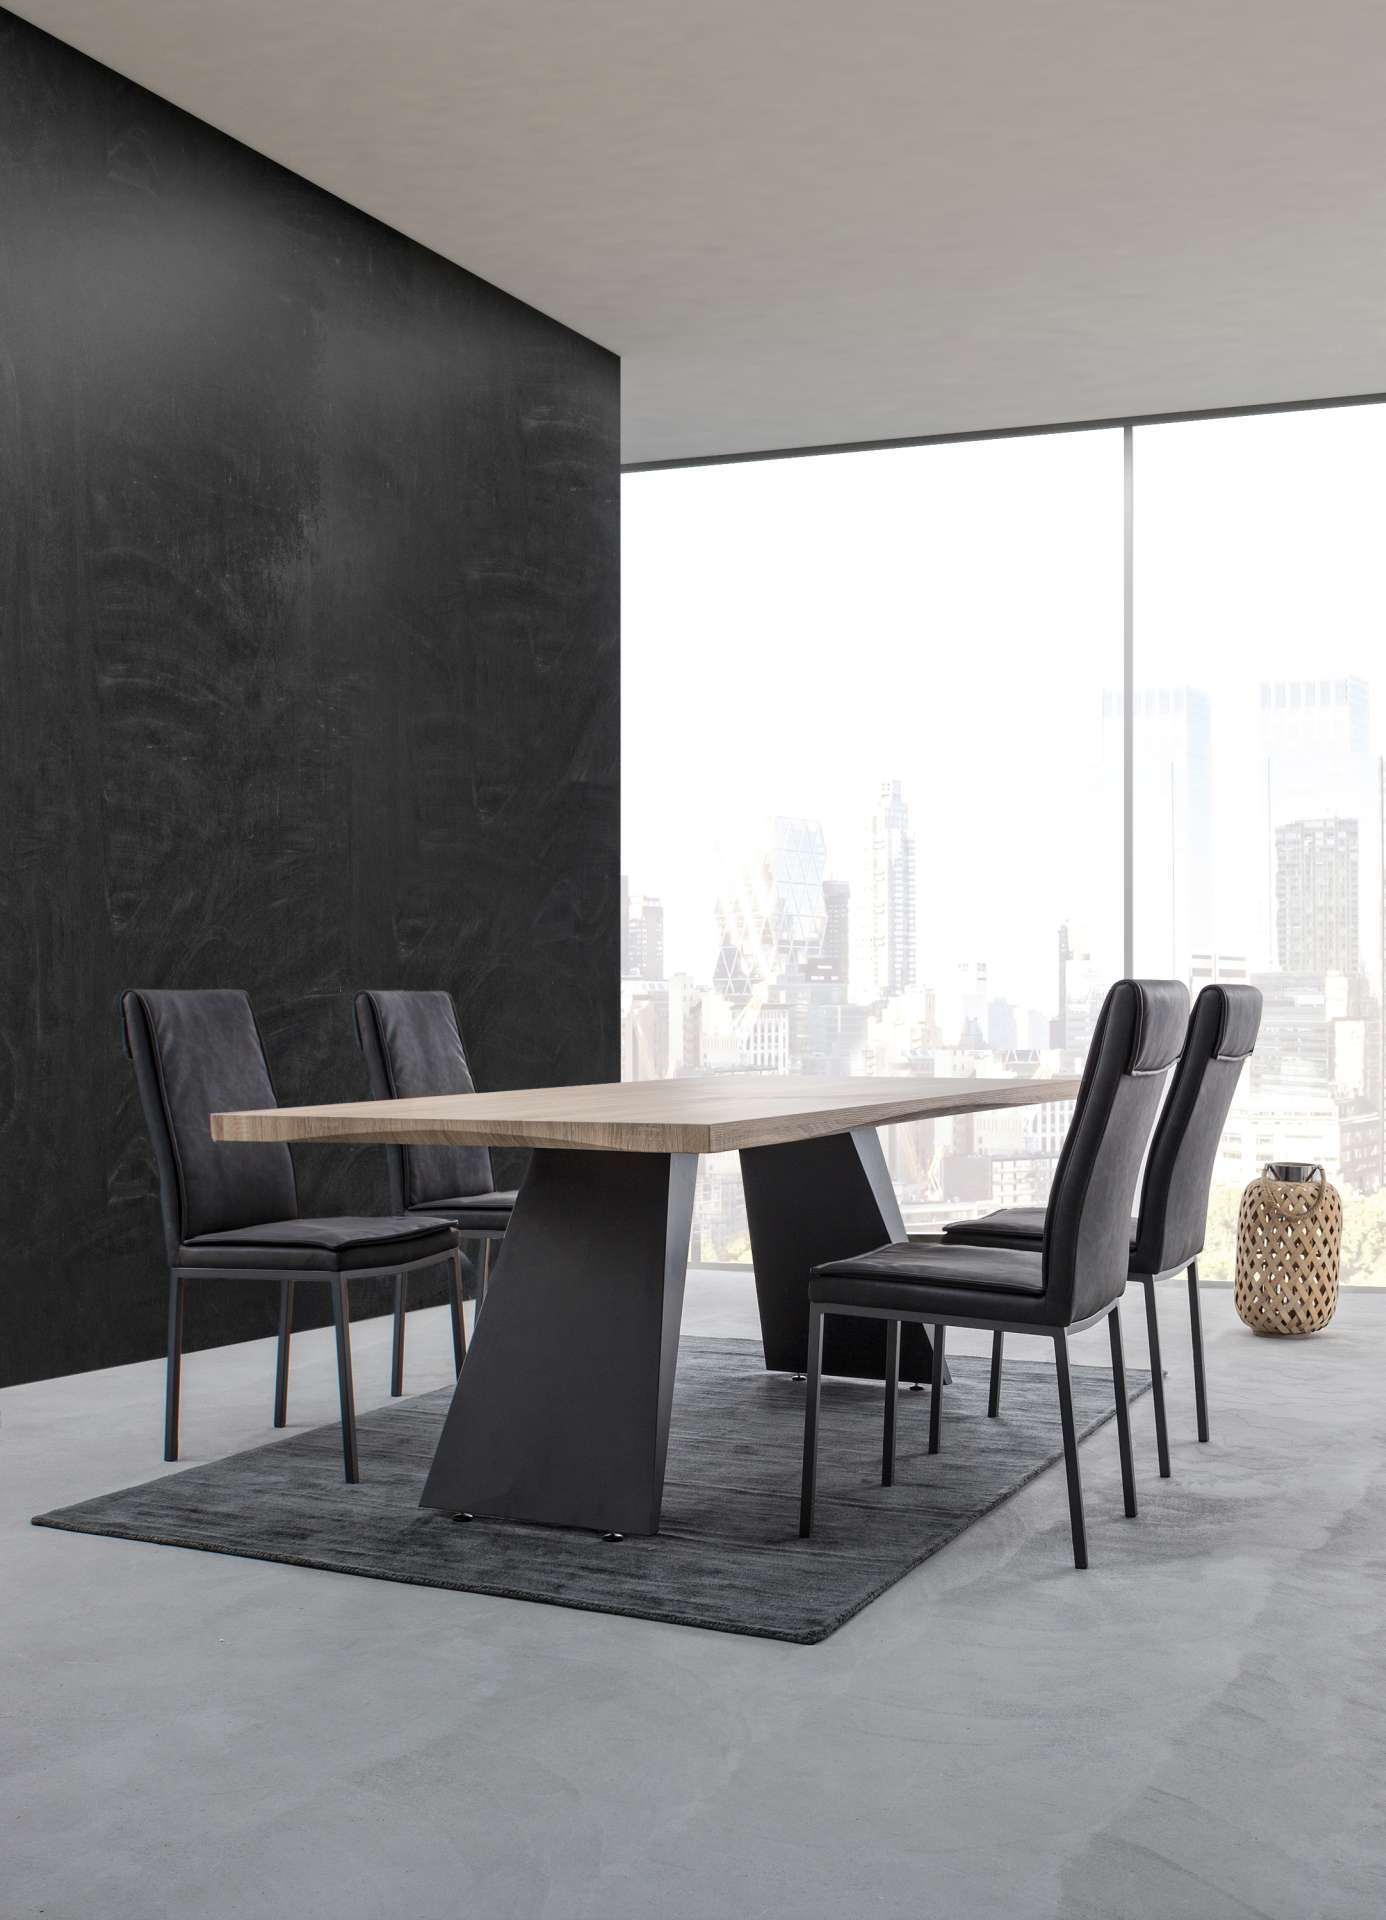 Der Esszimmerstuhl Sofie überzeugt mit seinem klassischen Design. Gefertigt wurde der Stuhl aus Kunstleder, welches einen Anthrazit Farbton hat. Das Gestell ist aus Metall und ist Schwarz. Die Sitzhöhe beträgt 49 cm.